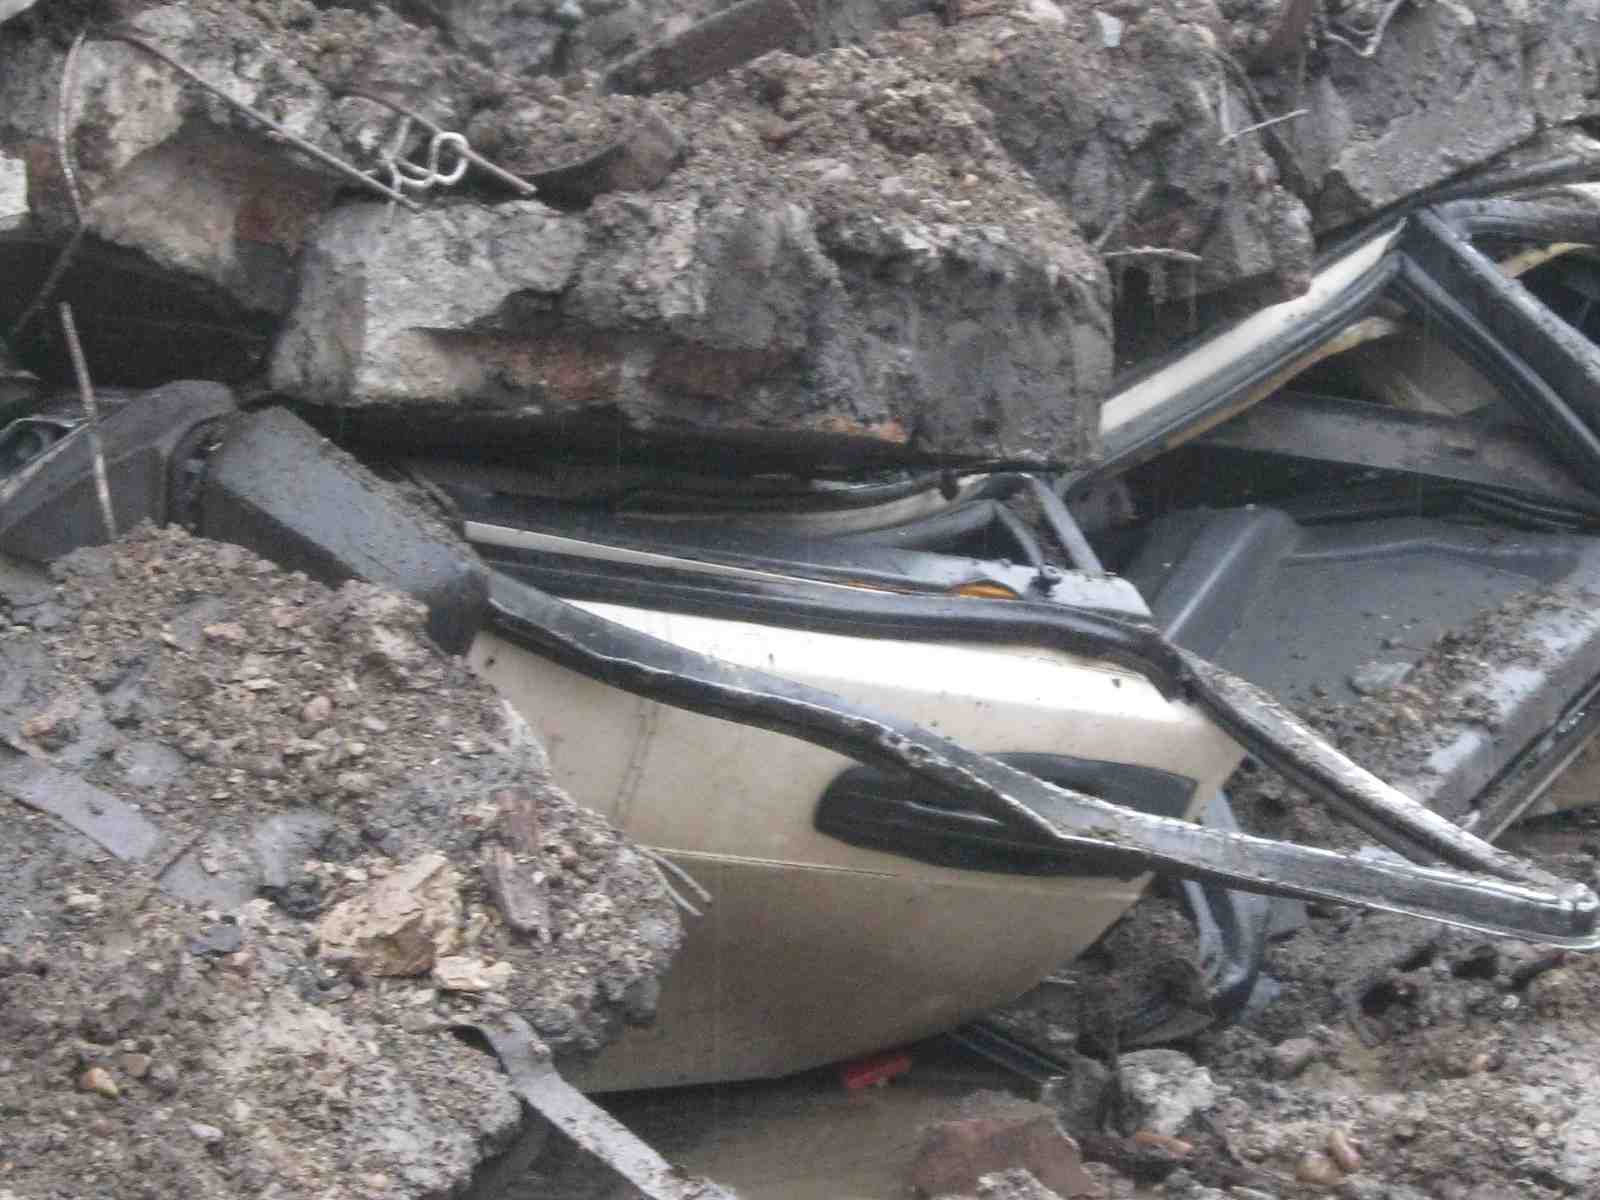 В Красноярске бетонная стена рухнула на автомобиль с людьми